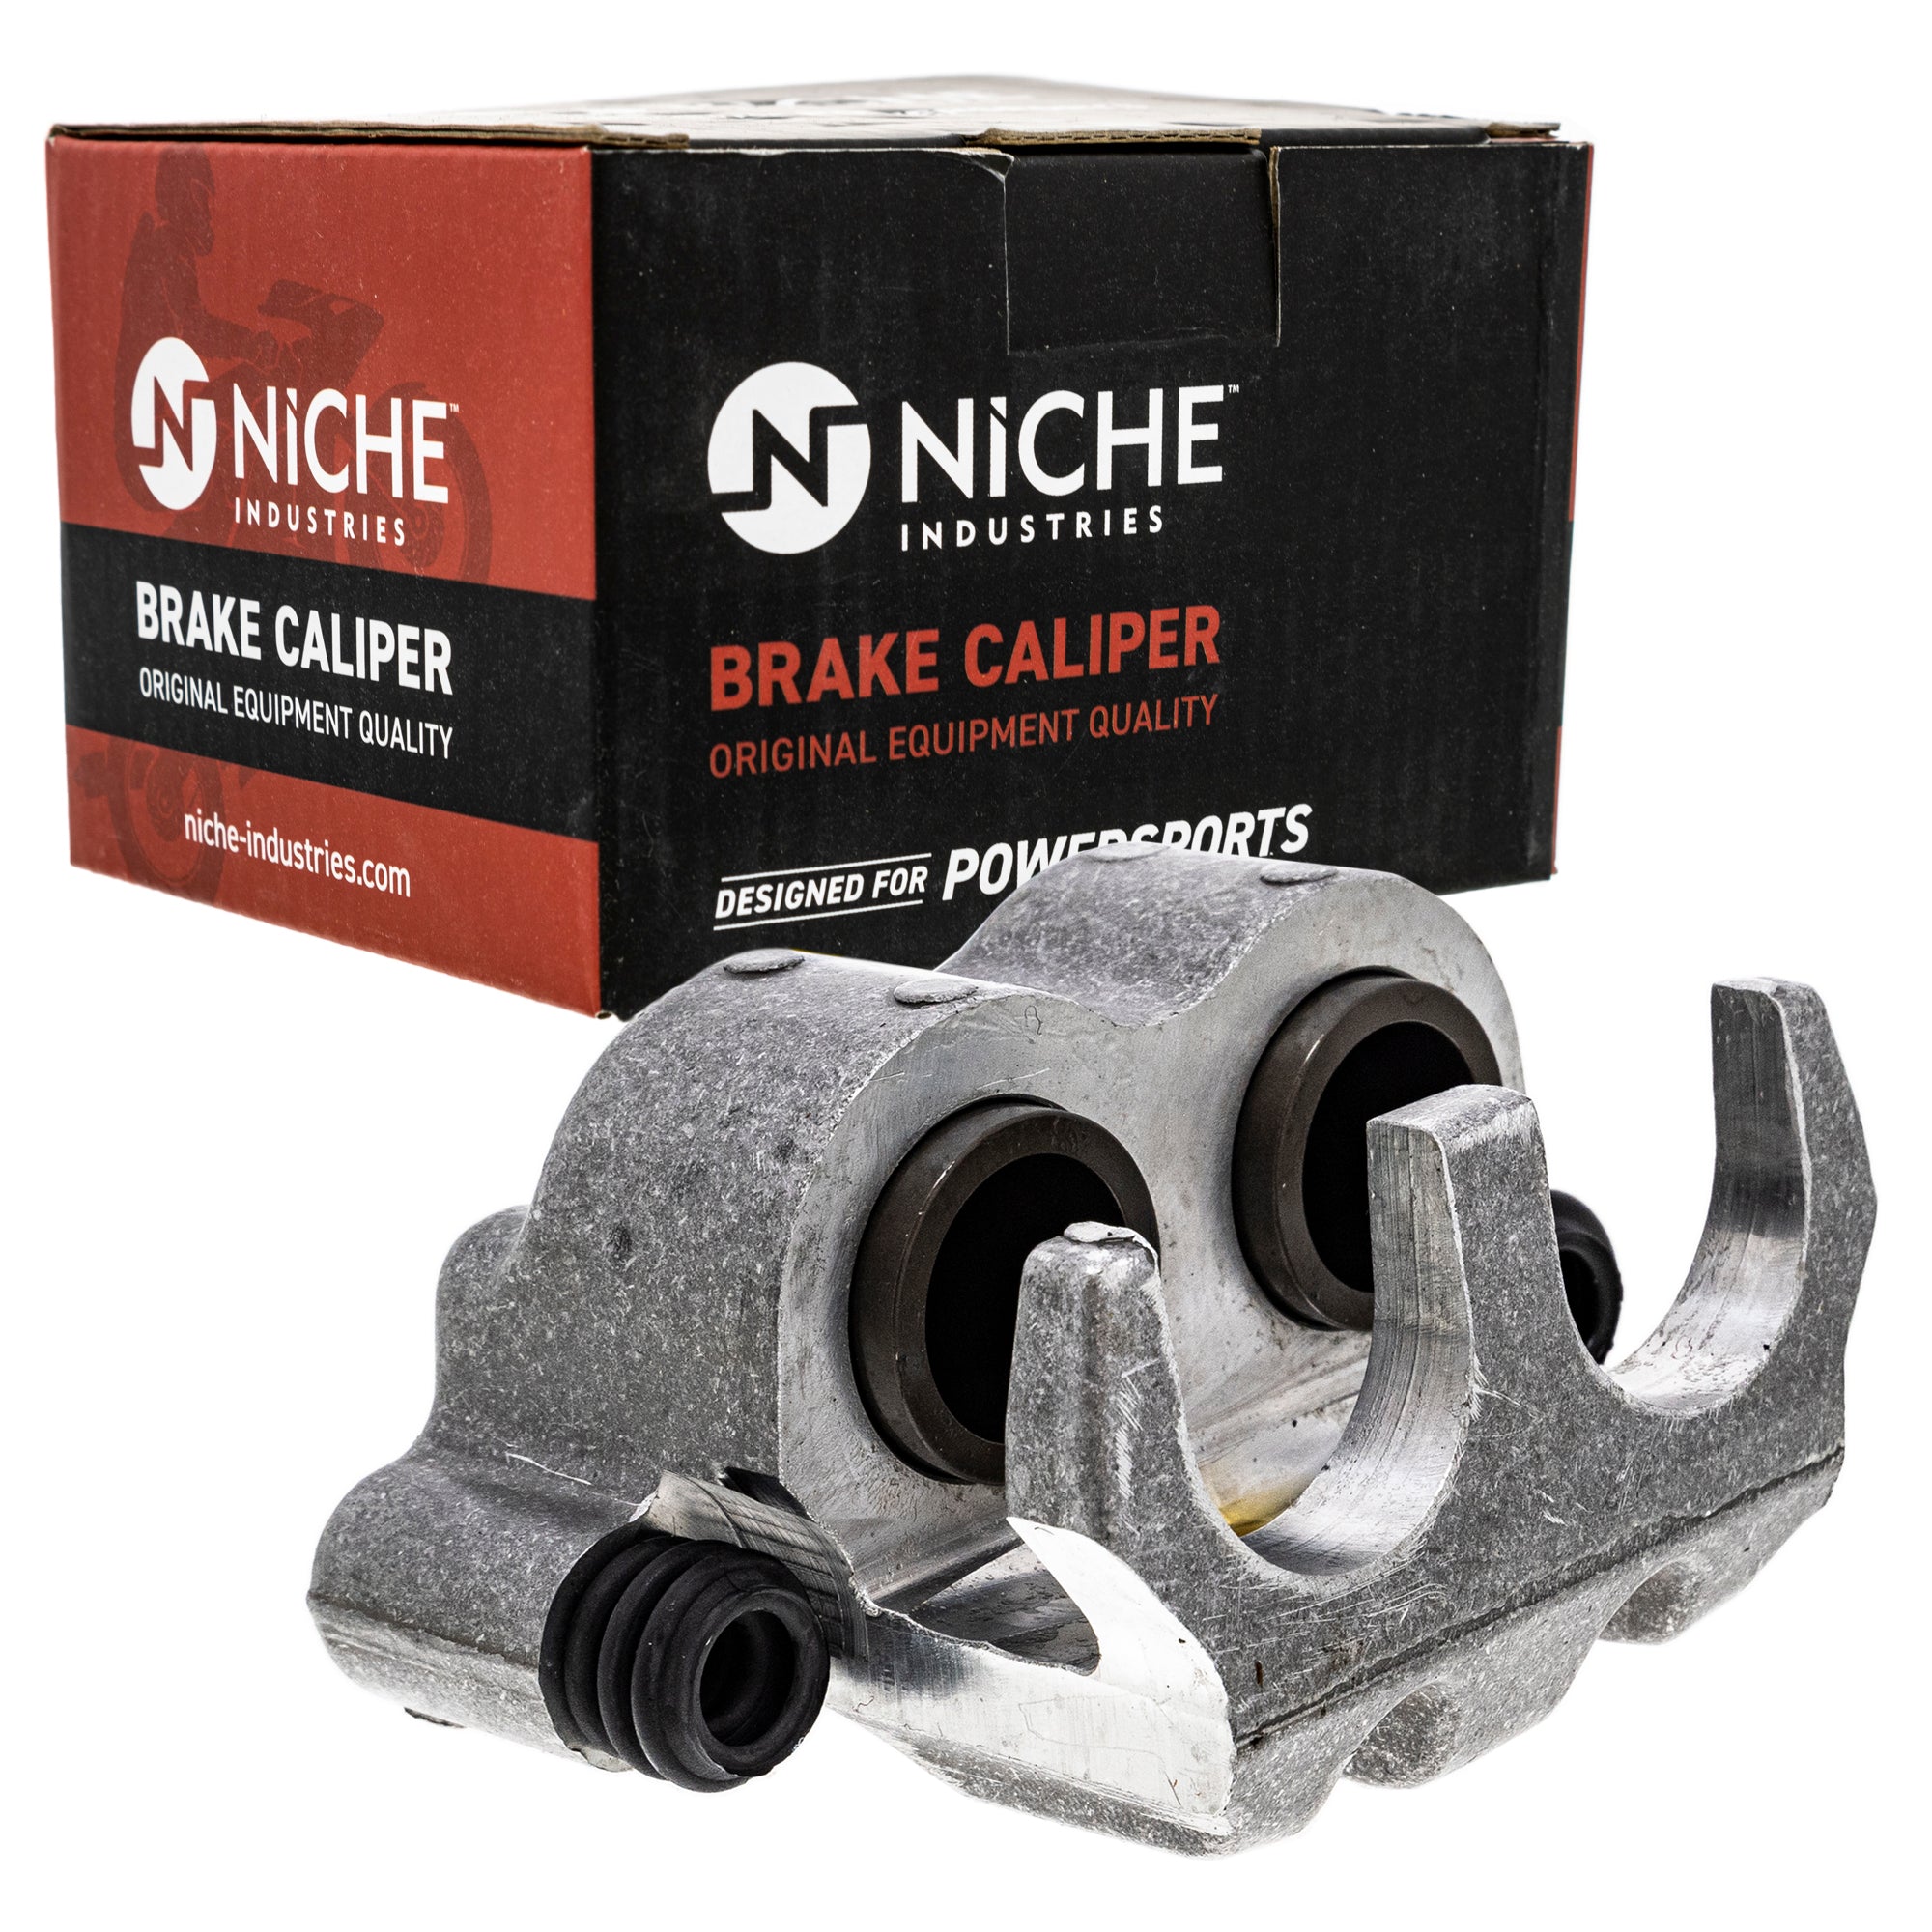 NICHE MK1001055 Brake Caliper Kit